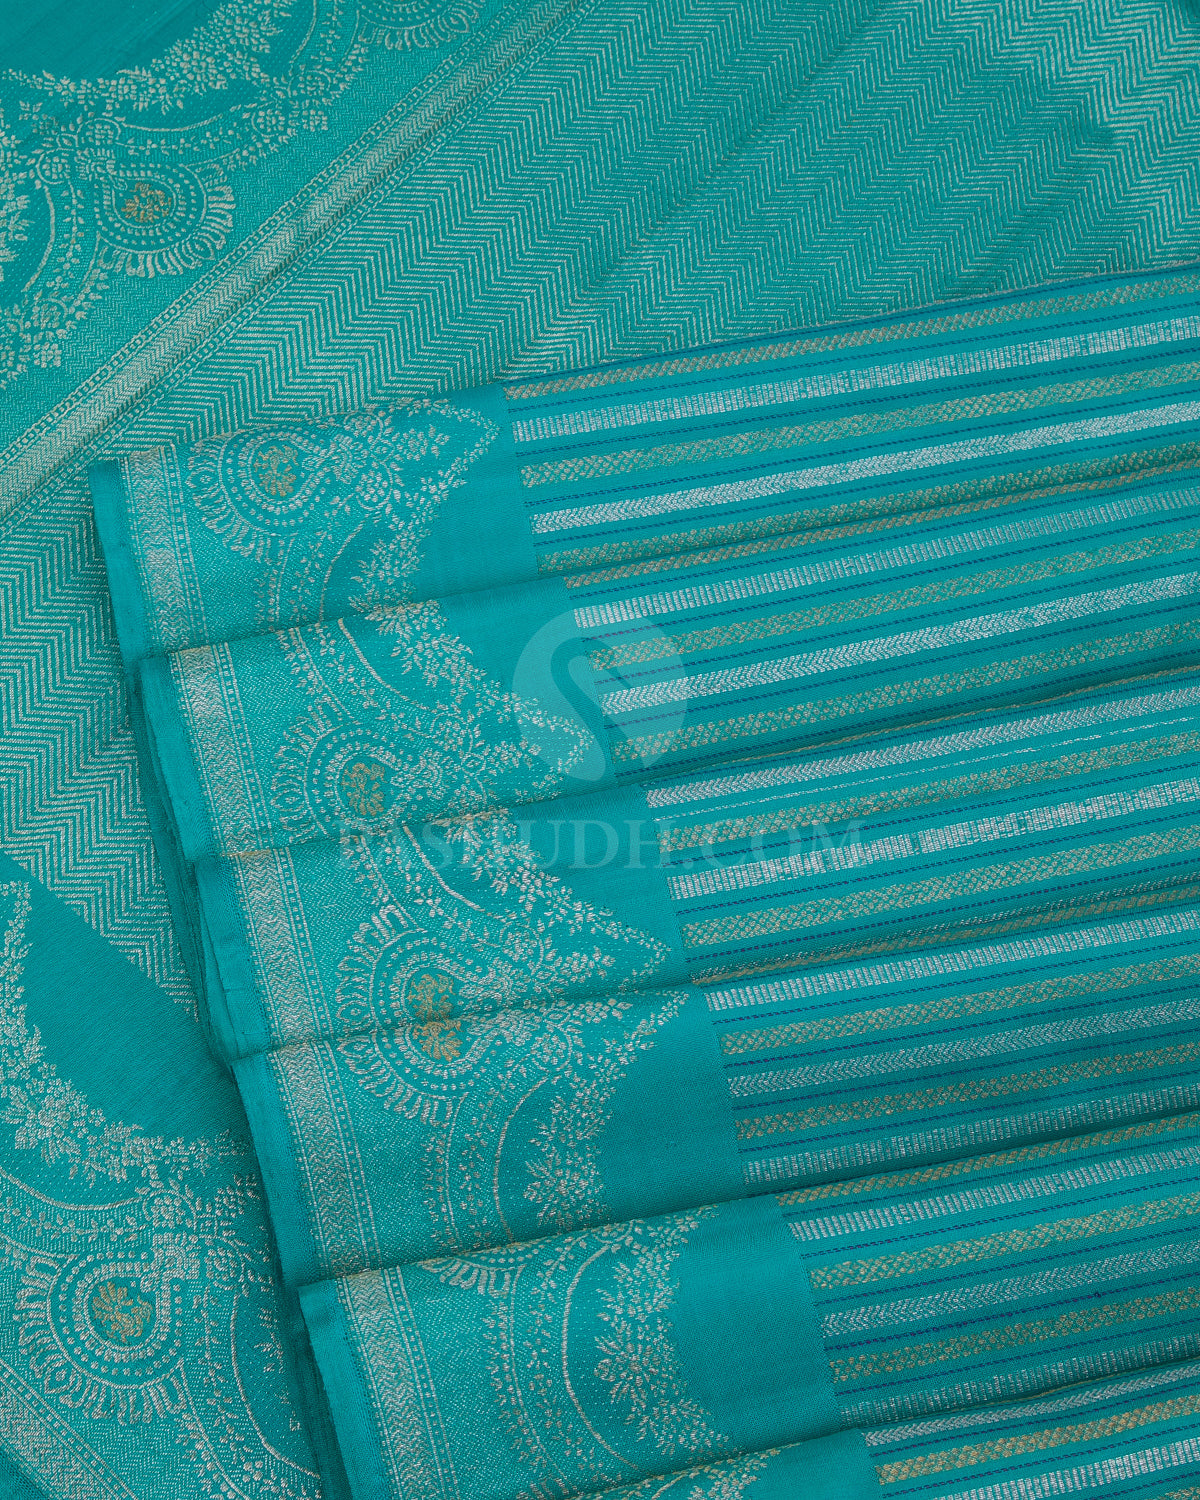 Turquoise Blue And Bright Blue Kanjivaram Silk Saree - S1115(B) - View 4